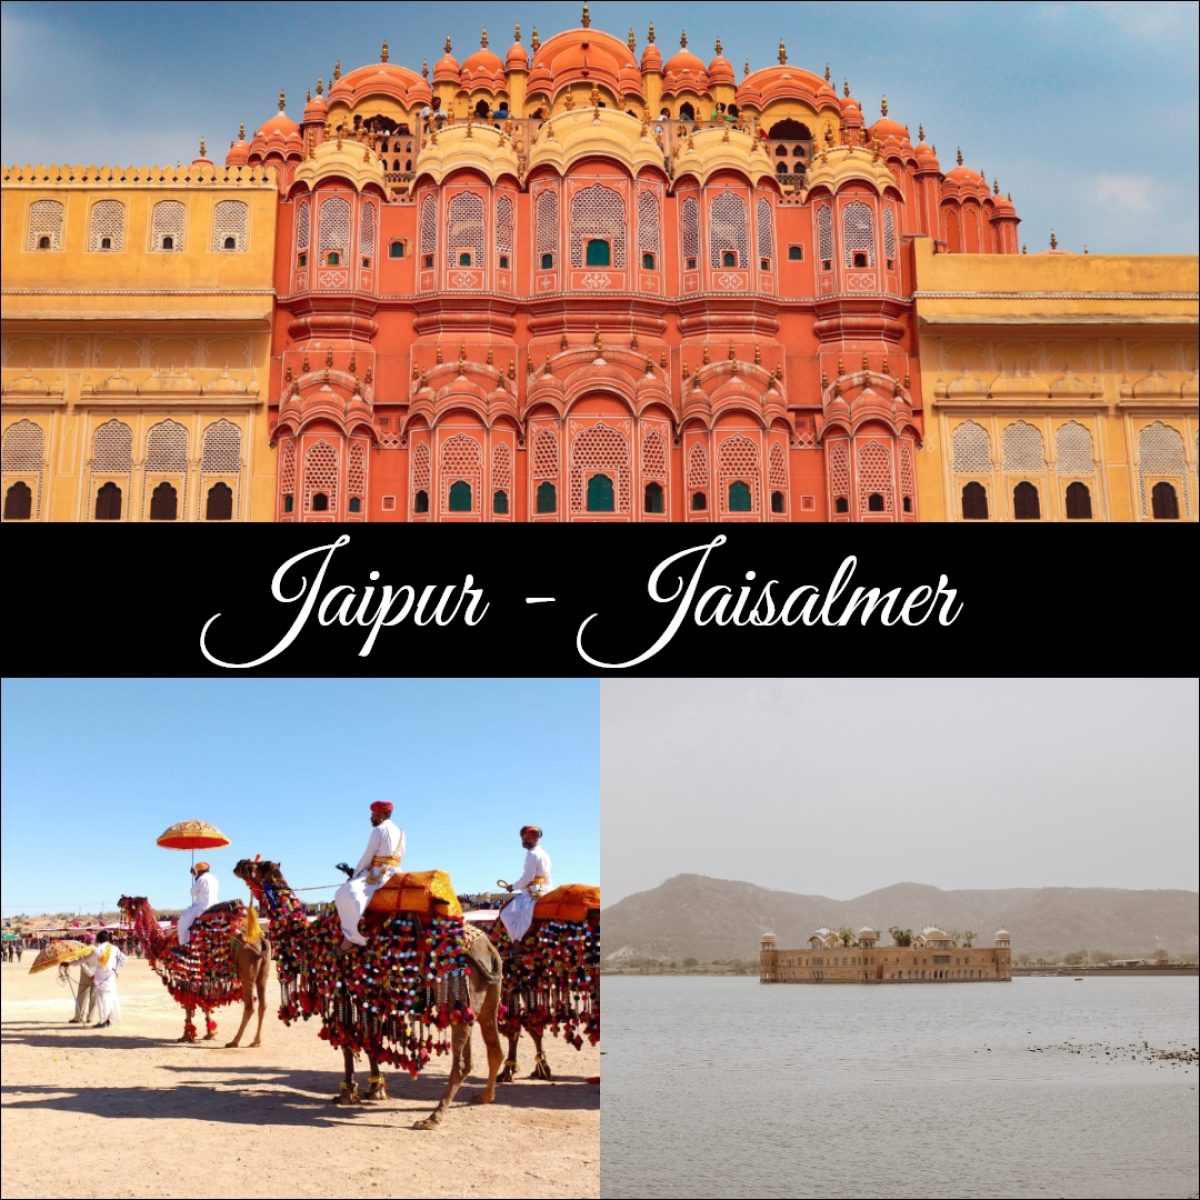 Jaipur - Jaisalmer